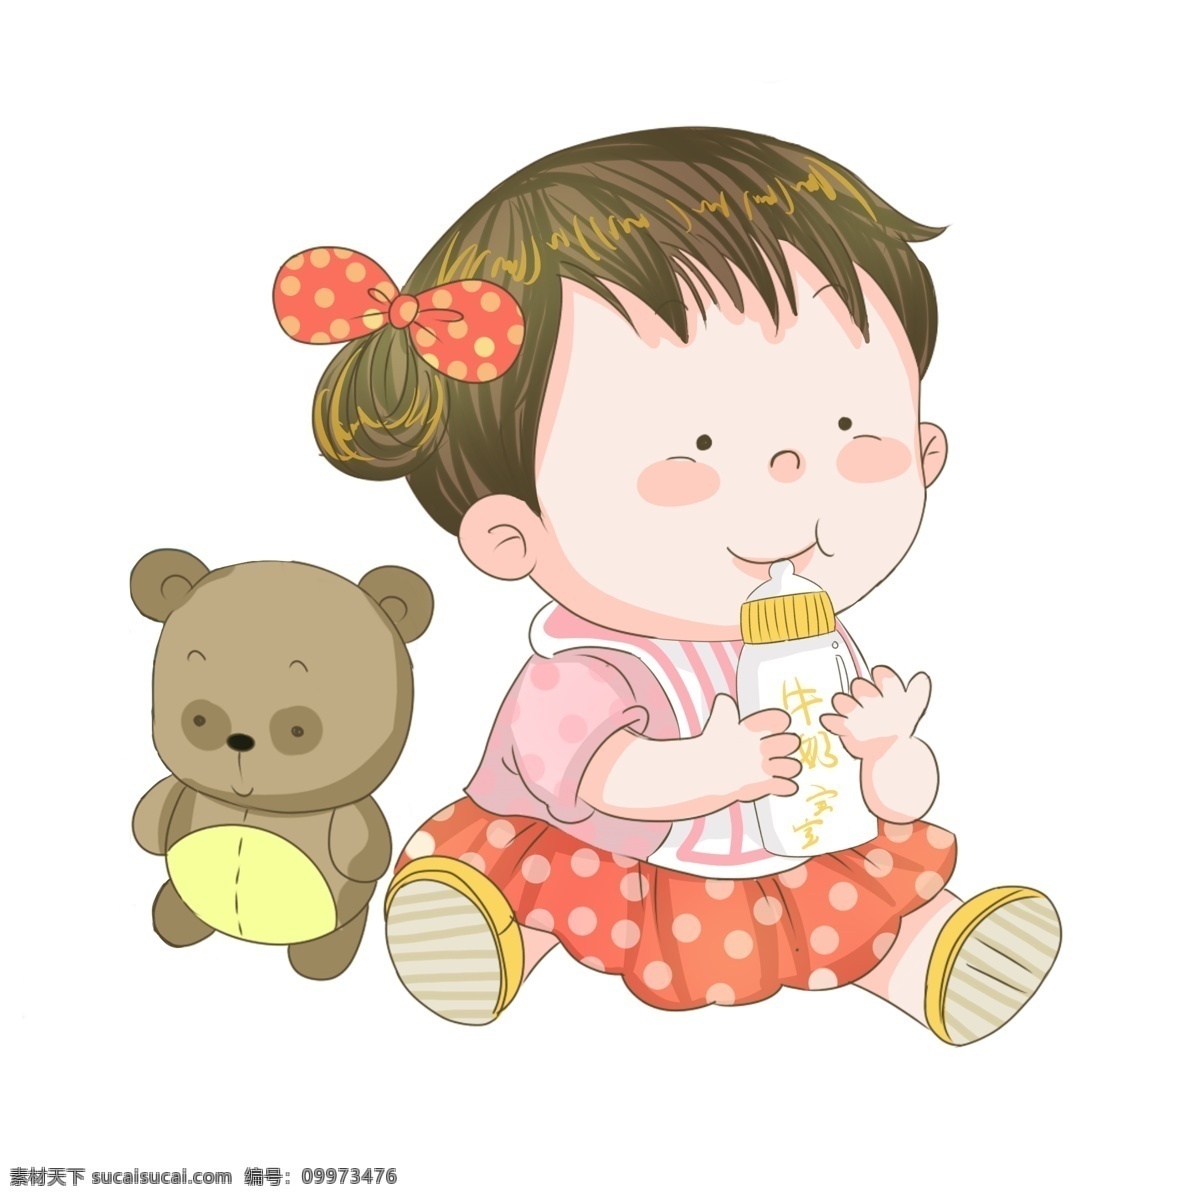 吃 奶 小宝宝 玩具 熊 插画 手绘婴儿 吃奶的小宝宝 玩具熊 健康小宝宝 可爱小宝宝 健康成长 卡通小宝宝 手绘